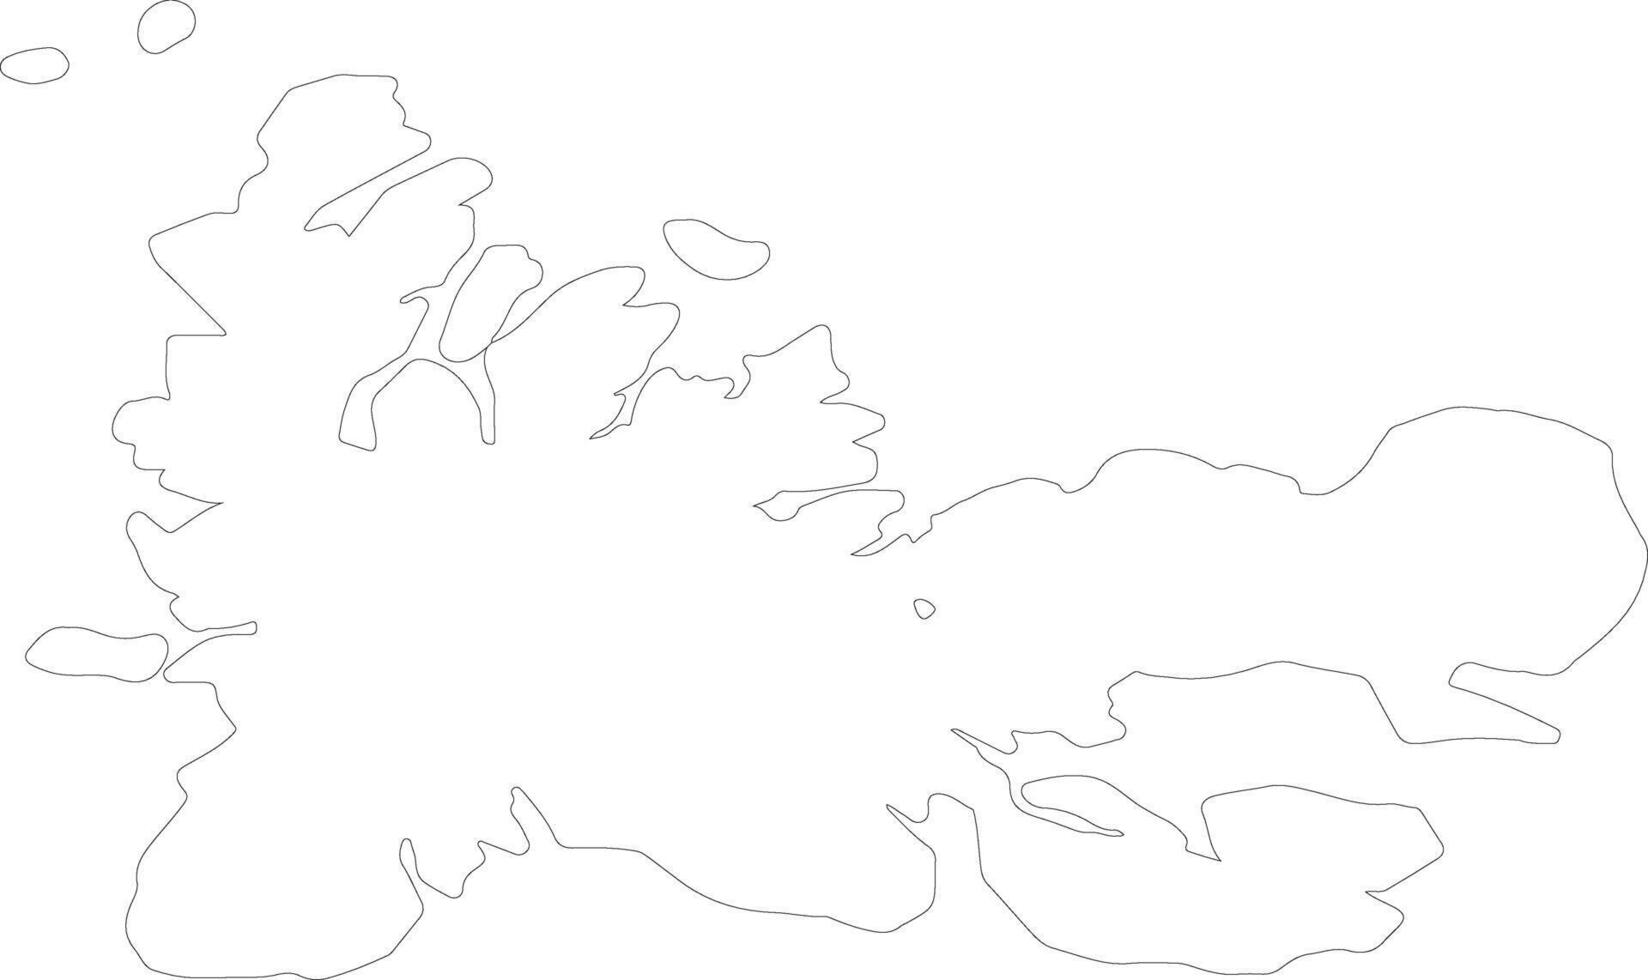 Archipiélago des kerguelén francés del Sur y antártico tierras contorno mapa vector